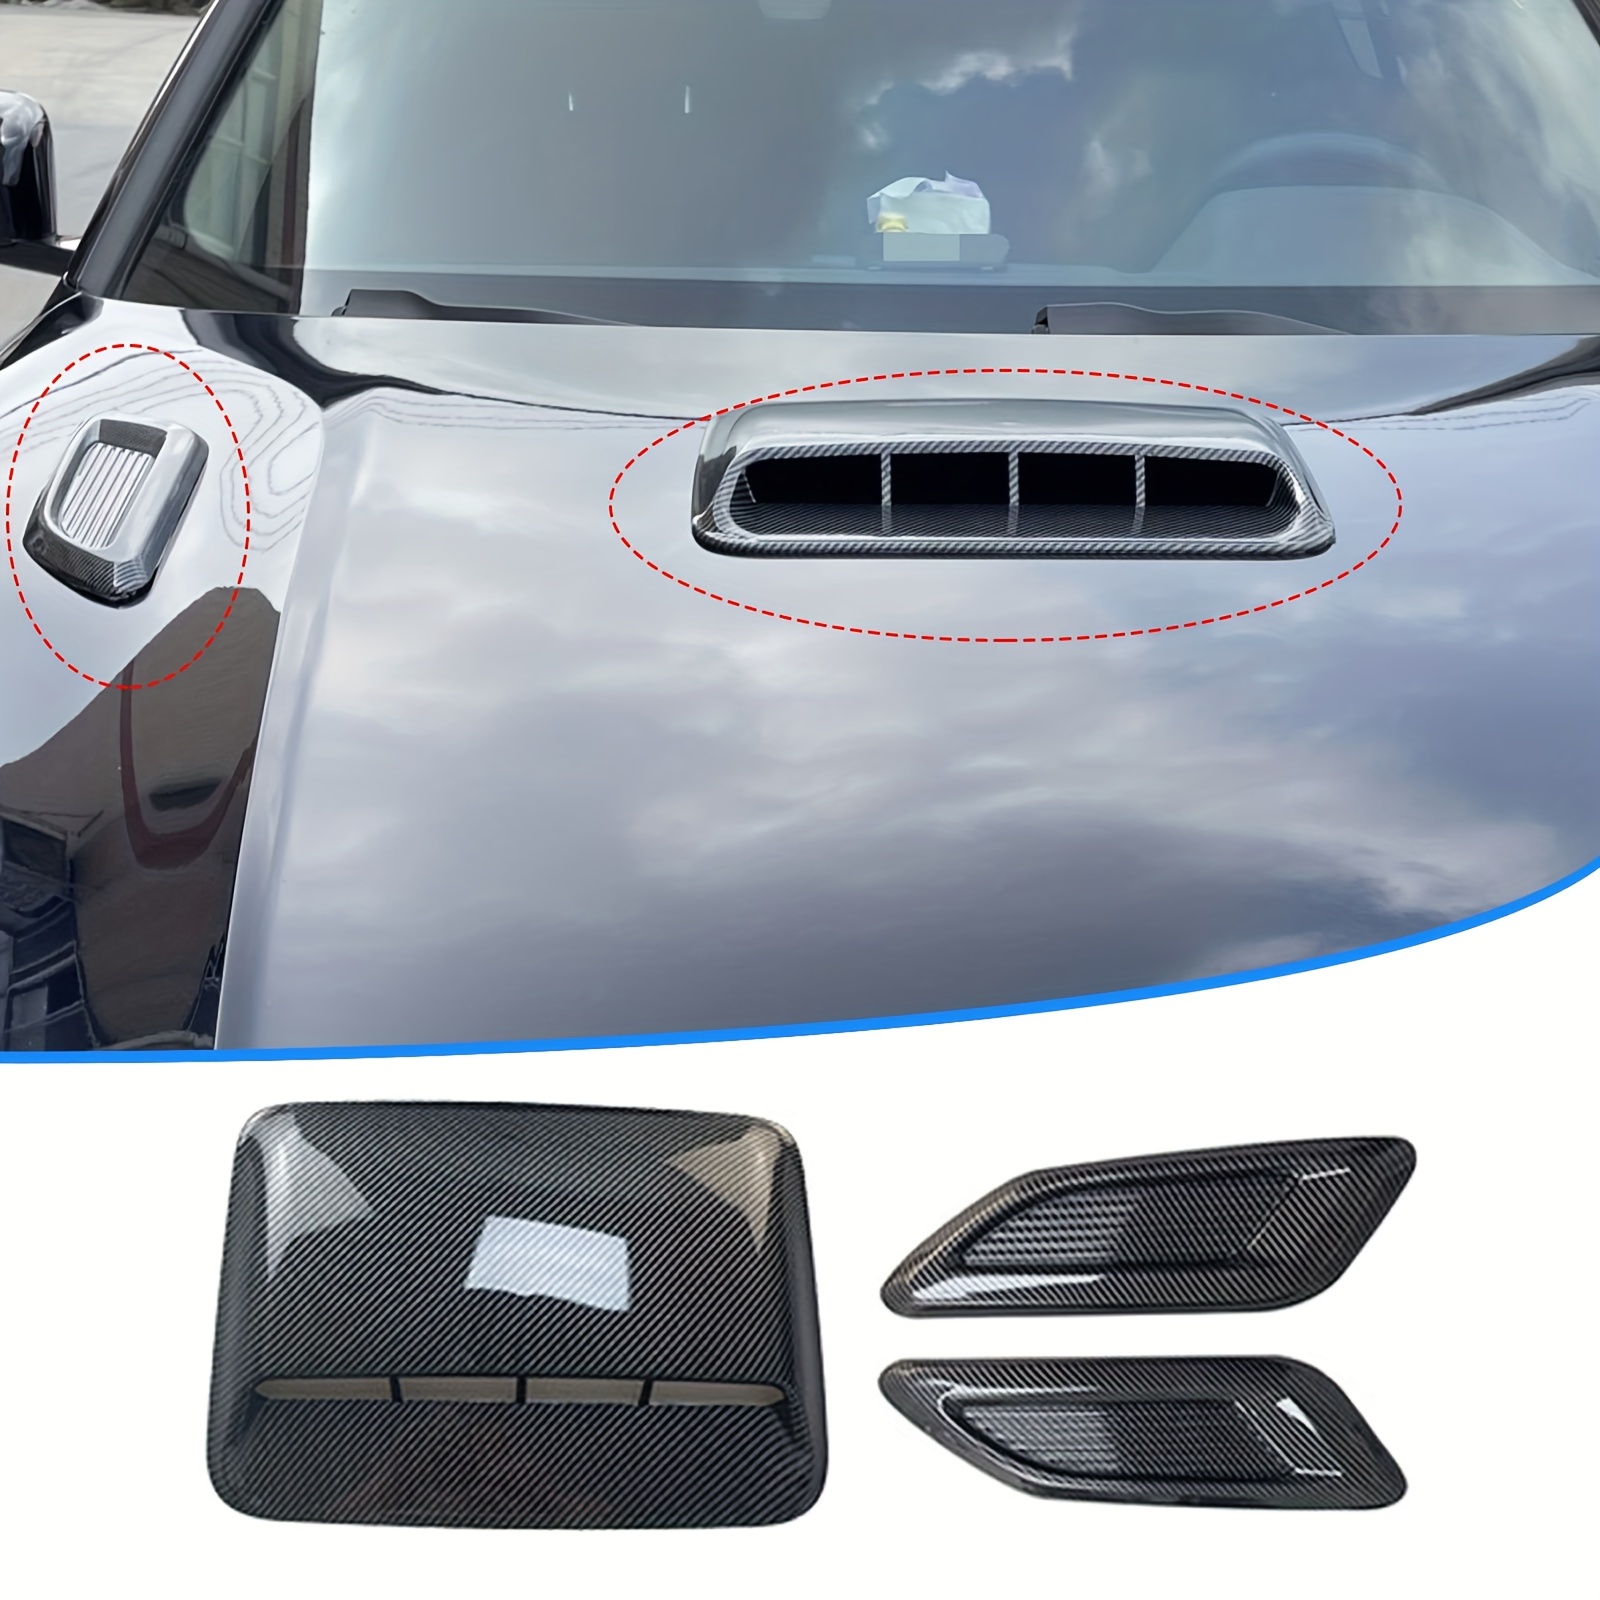 Car Air Intakes Exterior Decorative, MoreChioce Universal Bonnet Air Vent  Outlet Cover Fairing ABS Bonnet Cover Replacement Air Intake Side Deco